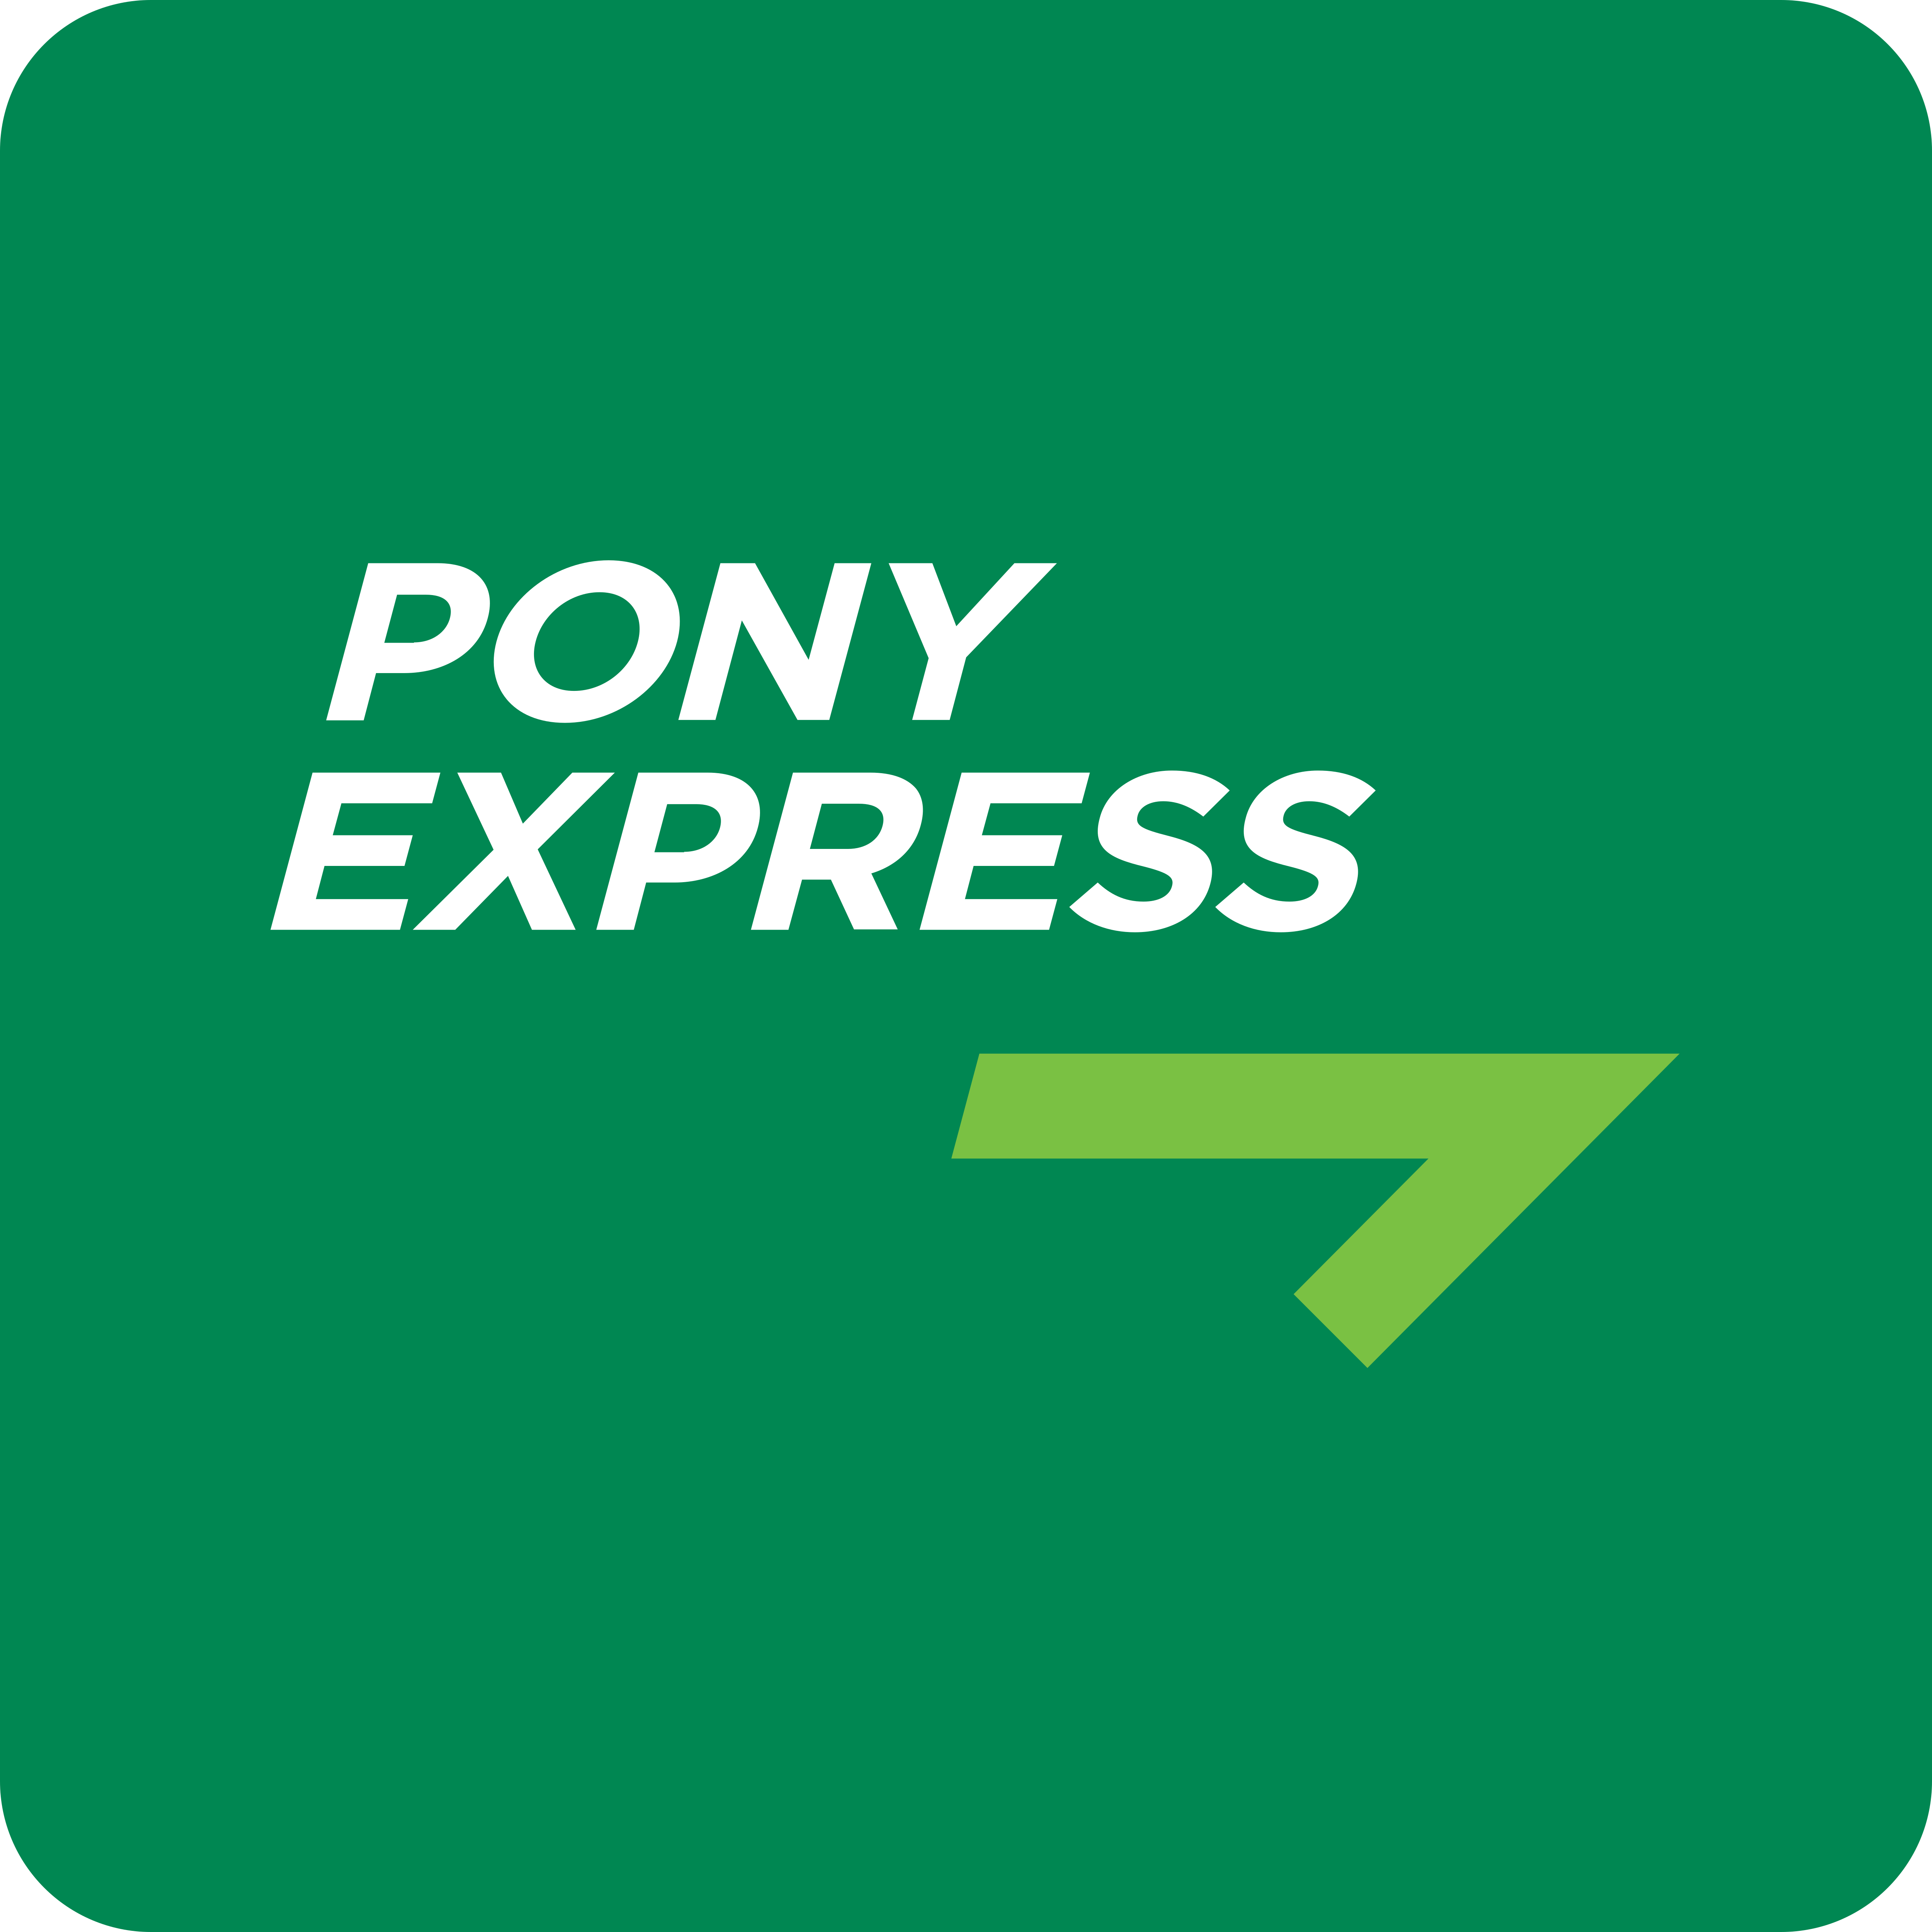 Сайт экспресс. Пони экспресс. Пони экспресс логотип. Курьерская служба пони экспресс. Постамат Pony Express.